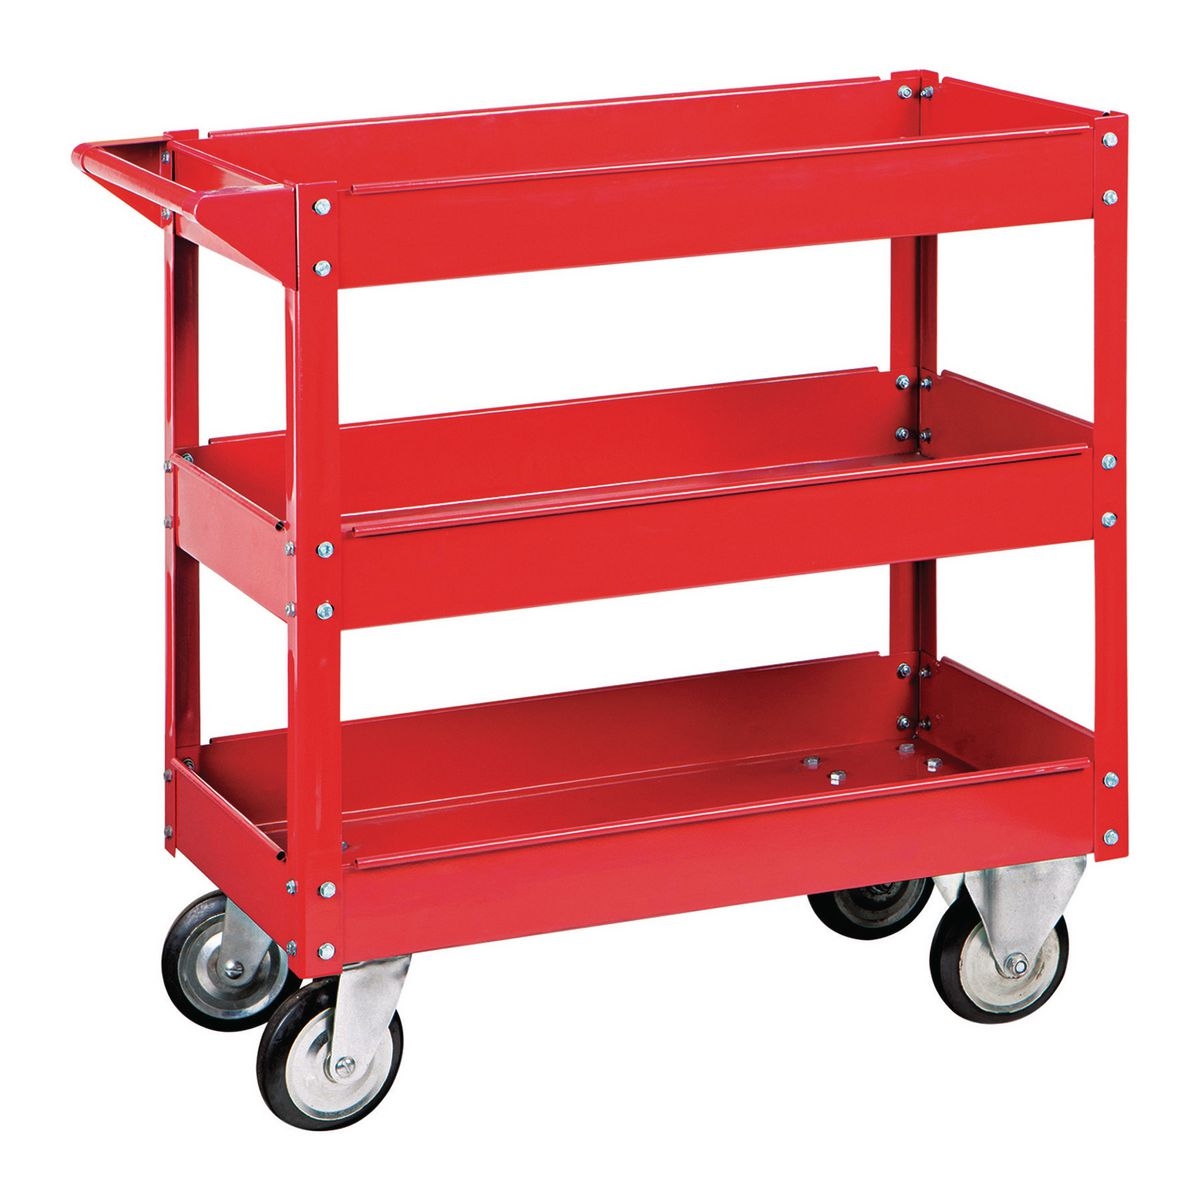 U.S. GENERAL 30 in. x 16 in. Three Shelf Steel Service Cart – Red